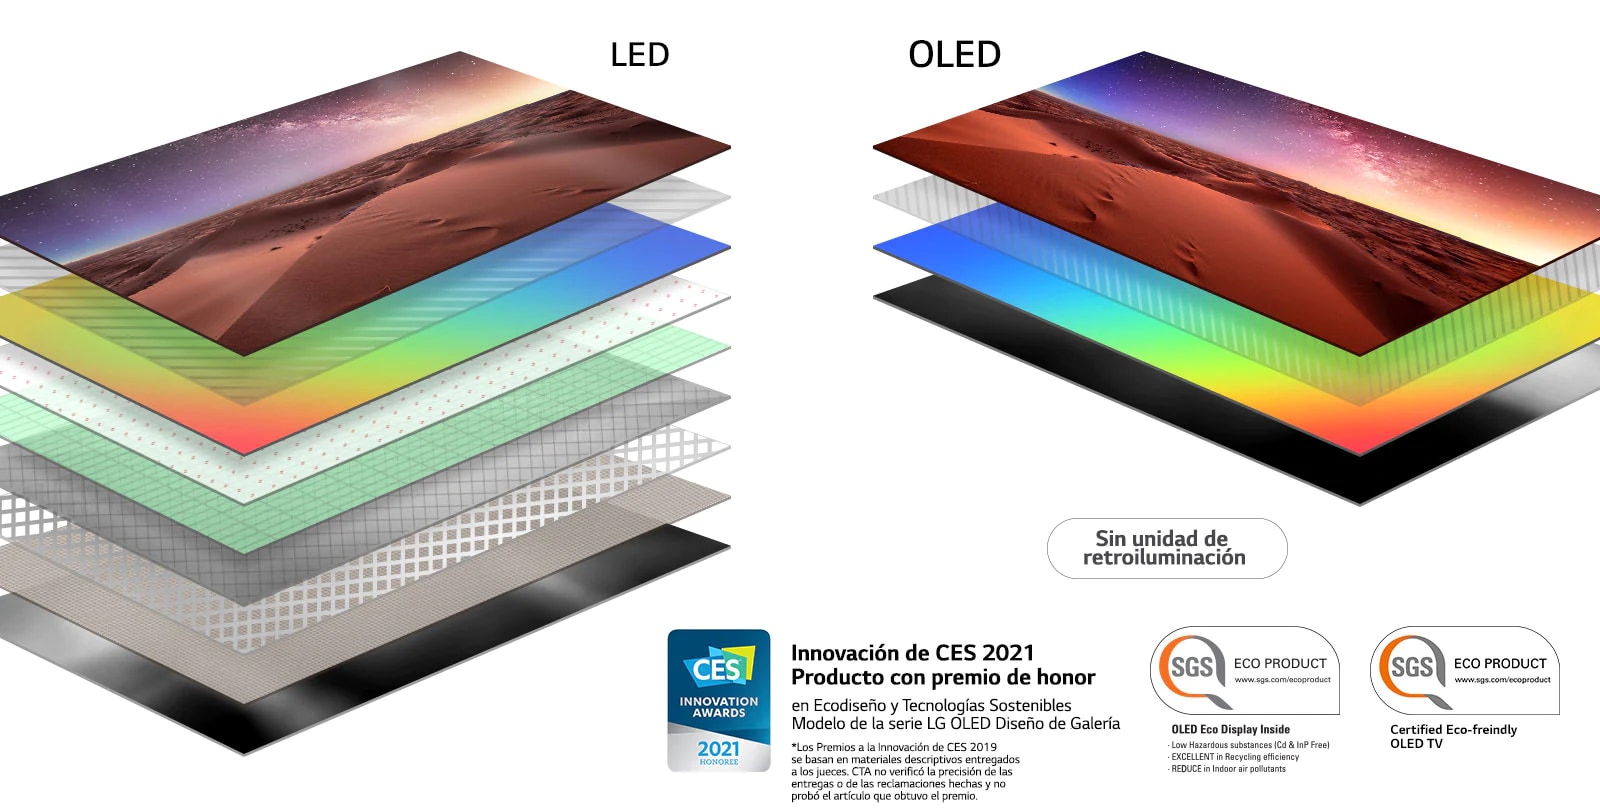 Comparación entre la composición de la capa de la pantalla del televisor LED retro iluminado y el televisor OLED auto iluminado (reproducir el vídeo)